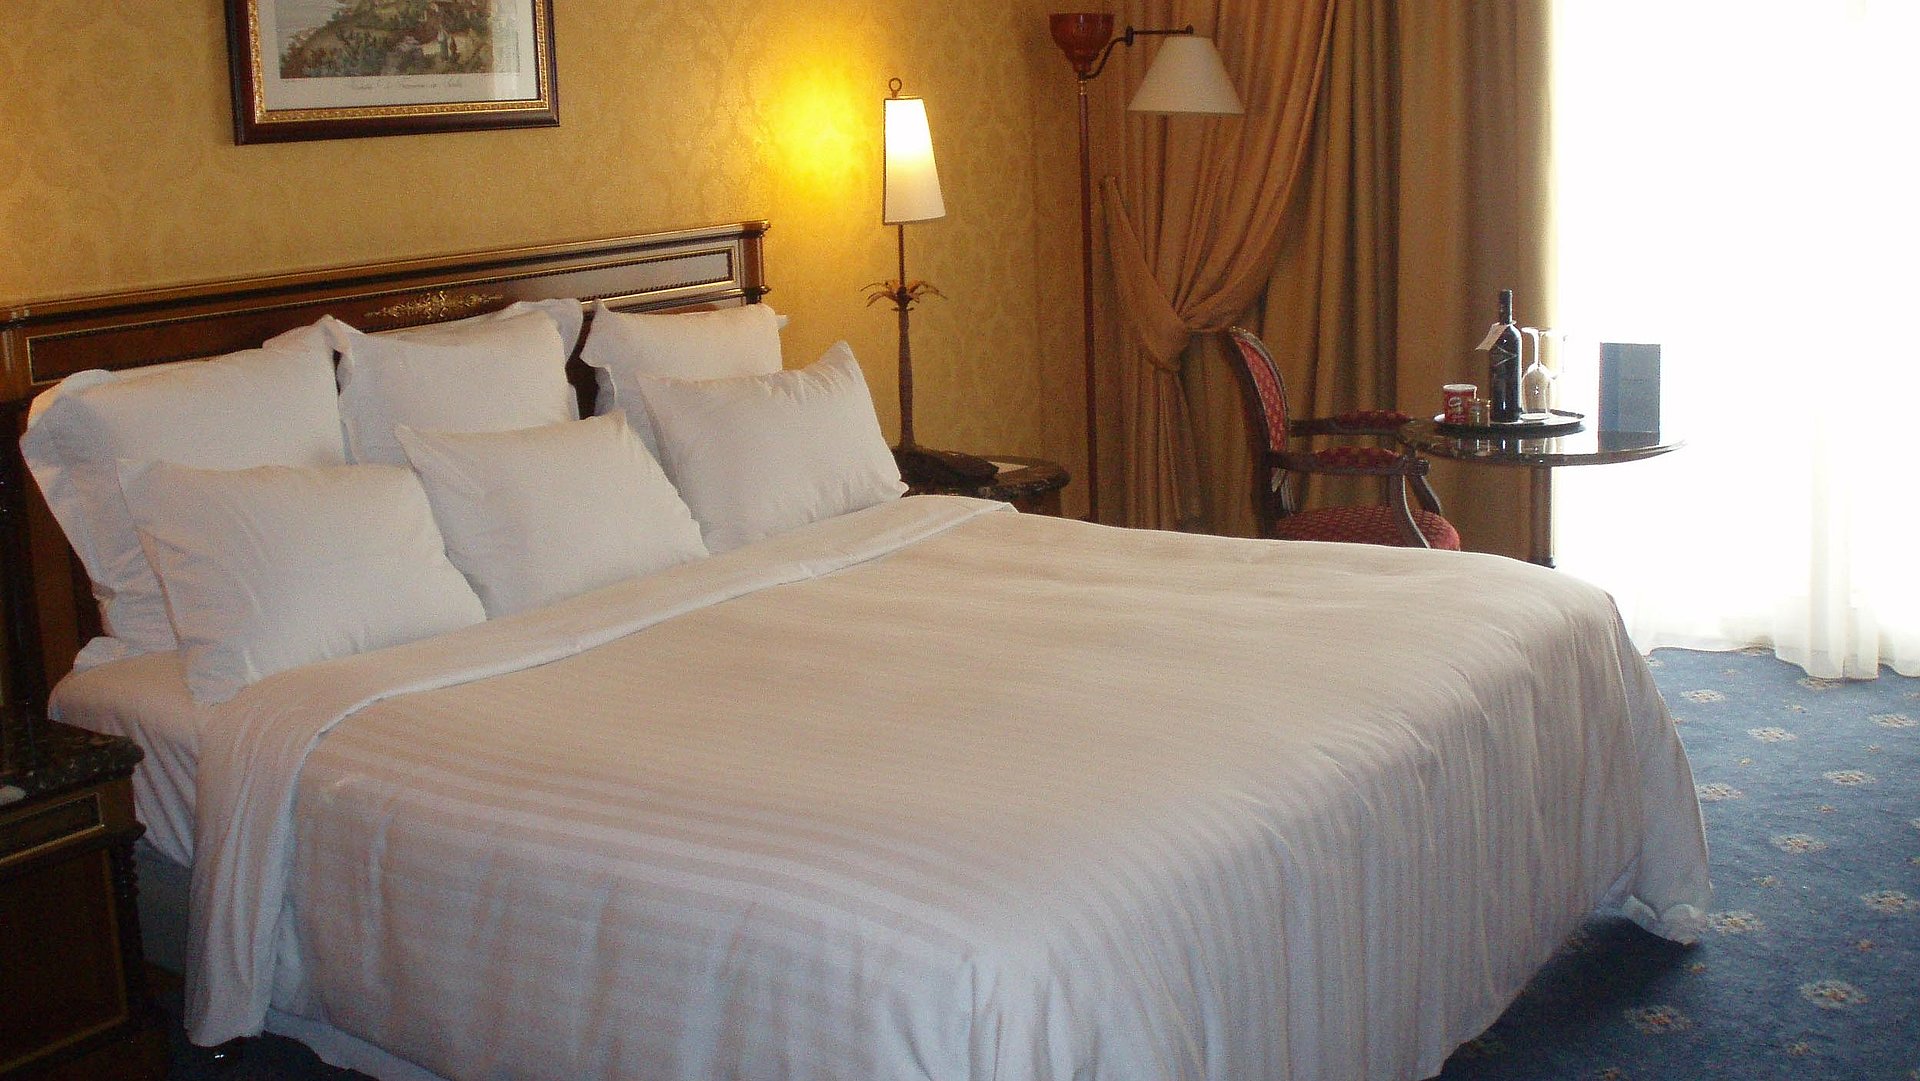 Pauschalen während der Woche in Ostbayern - sehr ordentliches Hotelzimmer mit großem Bett, warmer Nachtlampe und mittelgroßem Wandgemälde